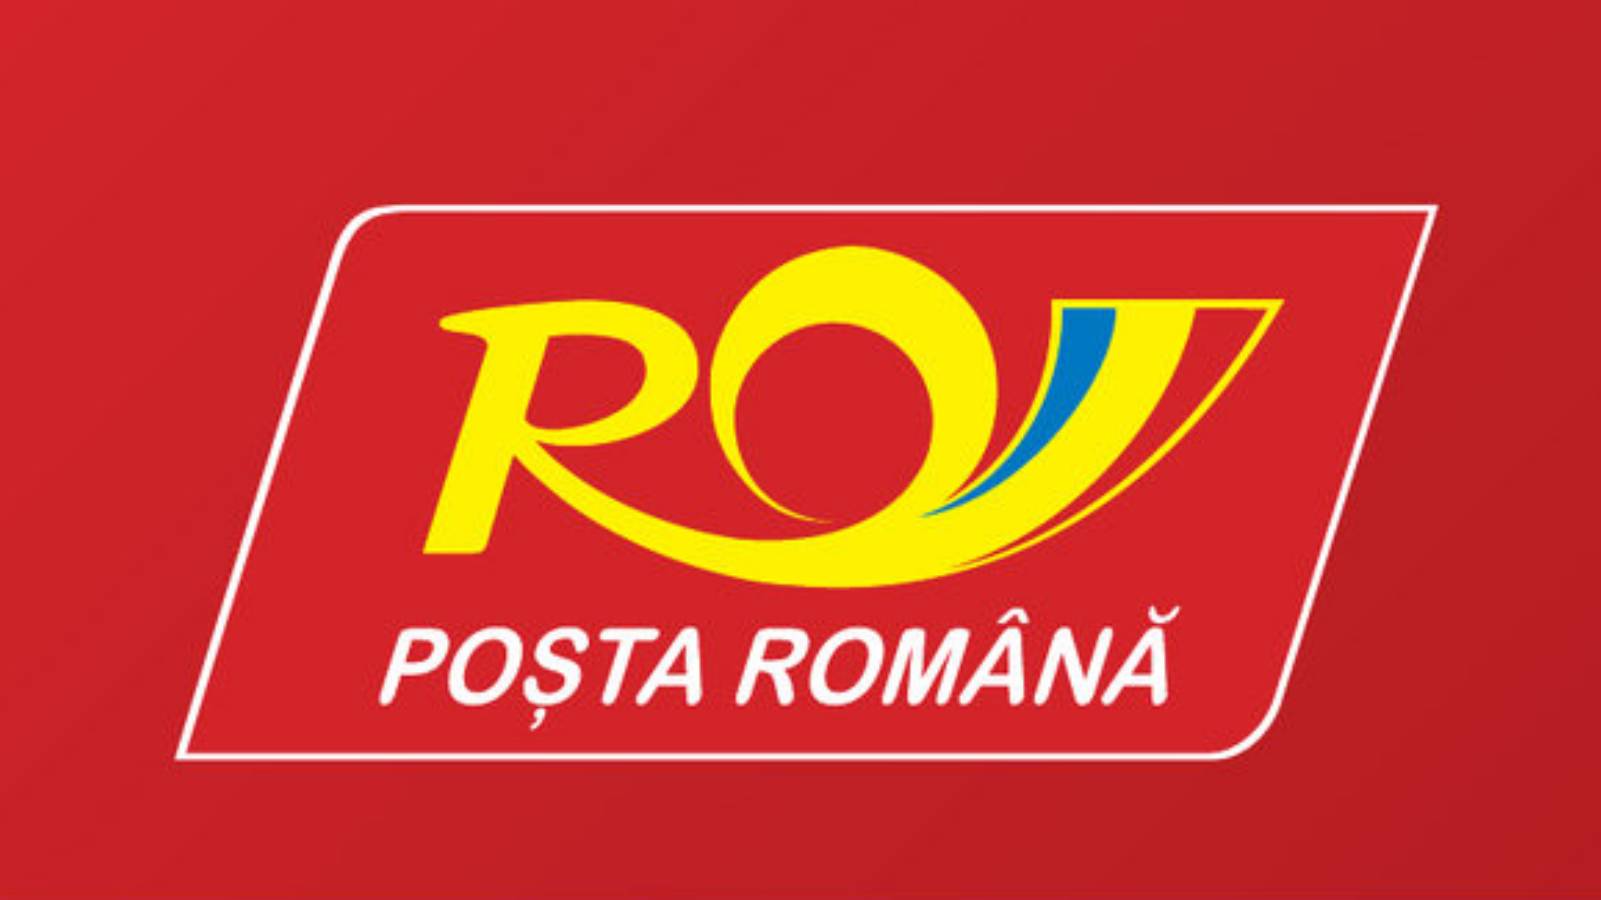 Stały urząd celny poczty rumuńskiej